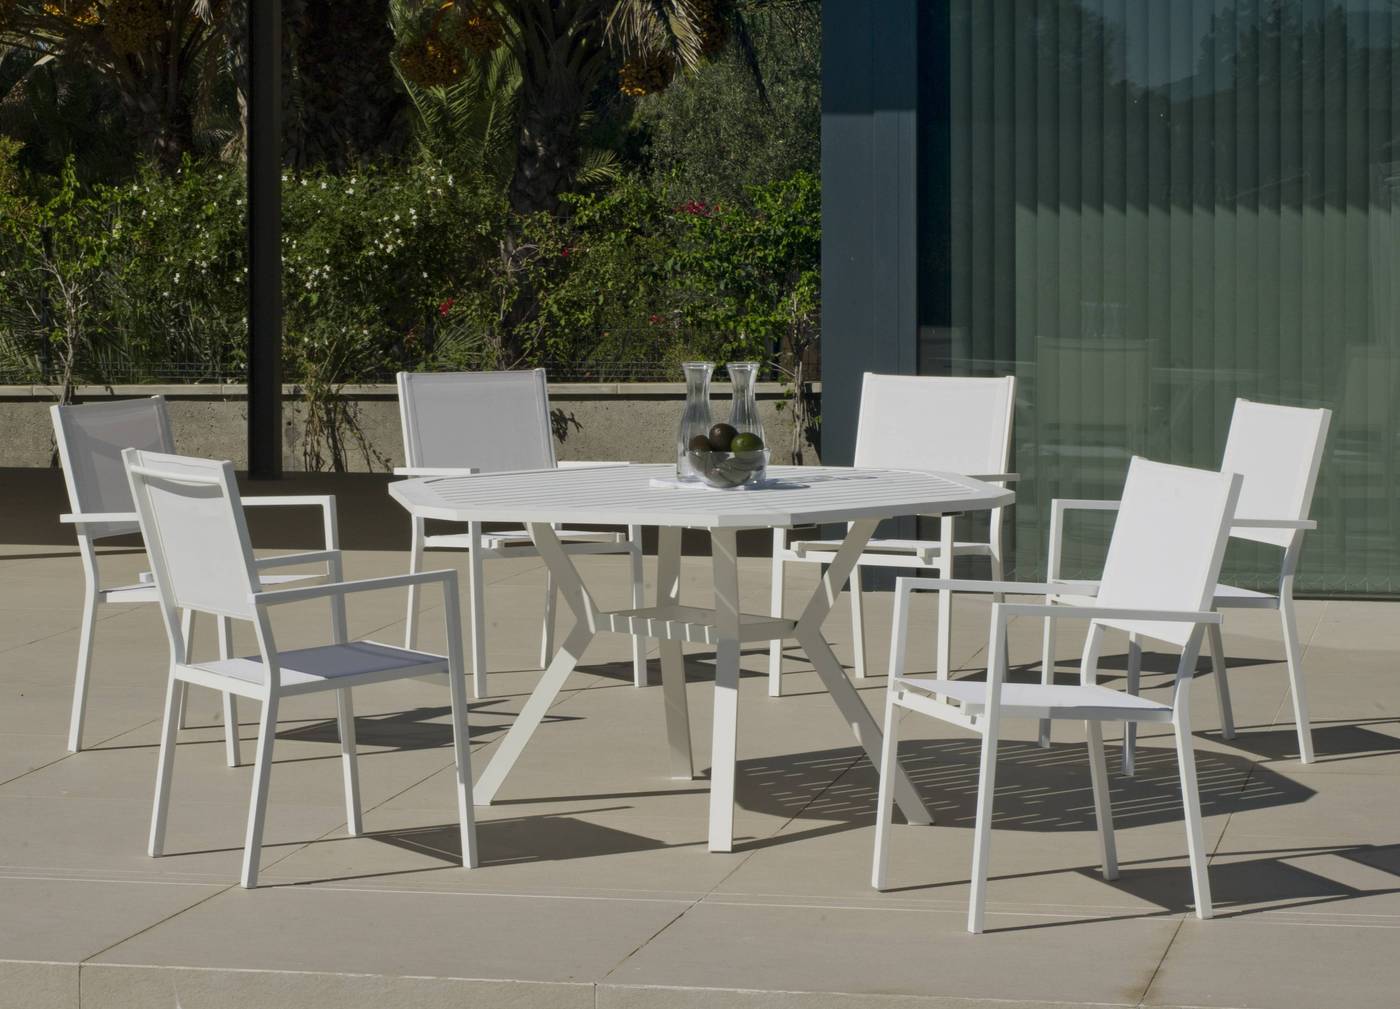 Moderno conjunto de aluminio luxe: Mesa de comedor hexagonal de 150 cm. + 6 sillones de textilen. Disponible en color blanco, antracita, champagne, plata o marrón.